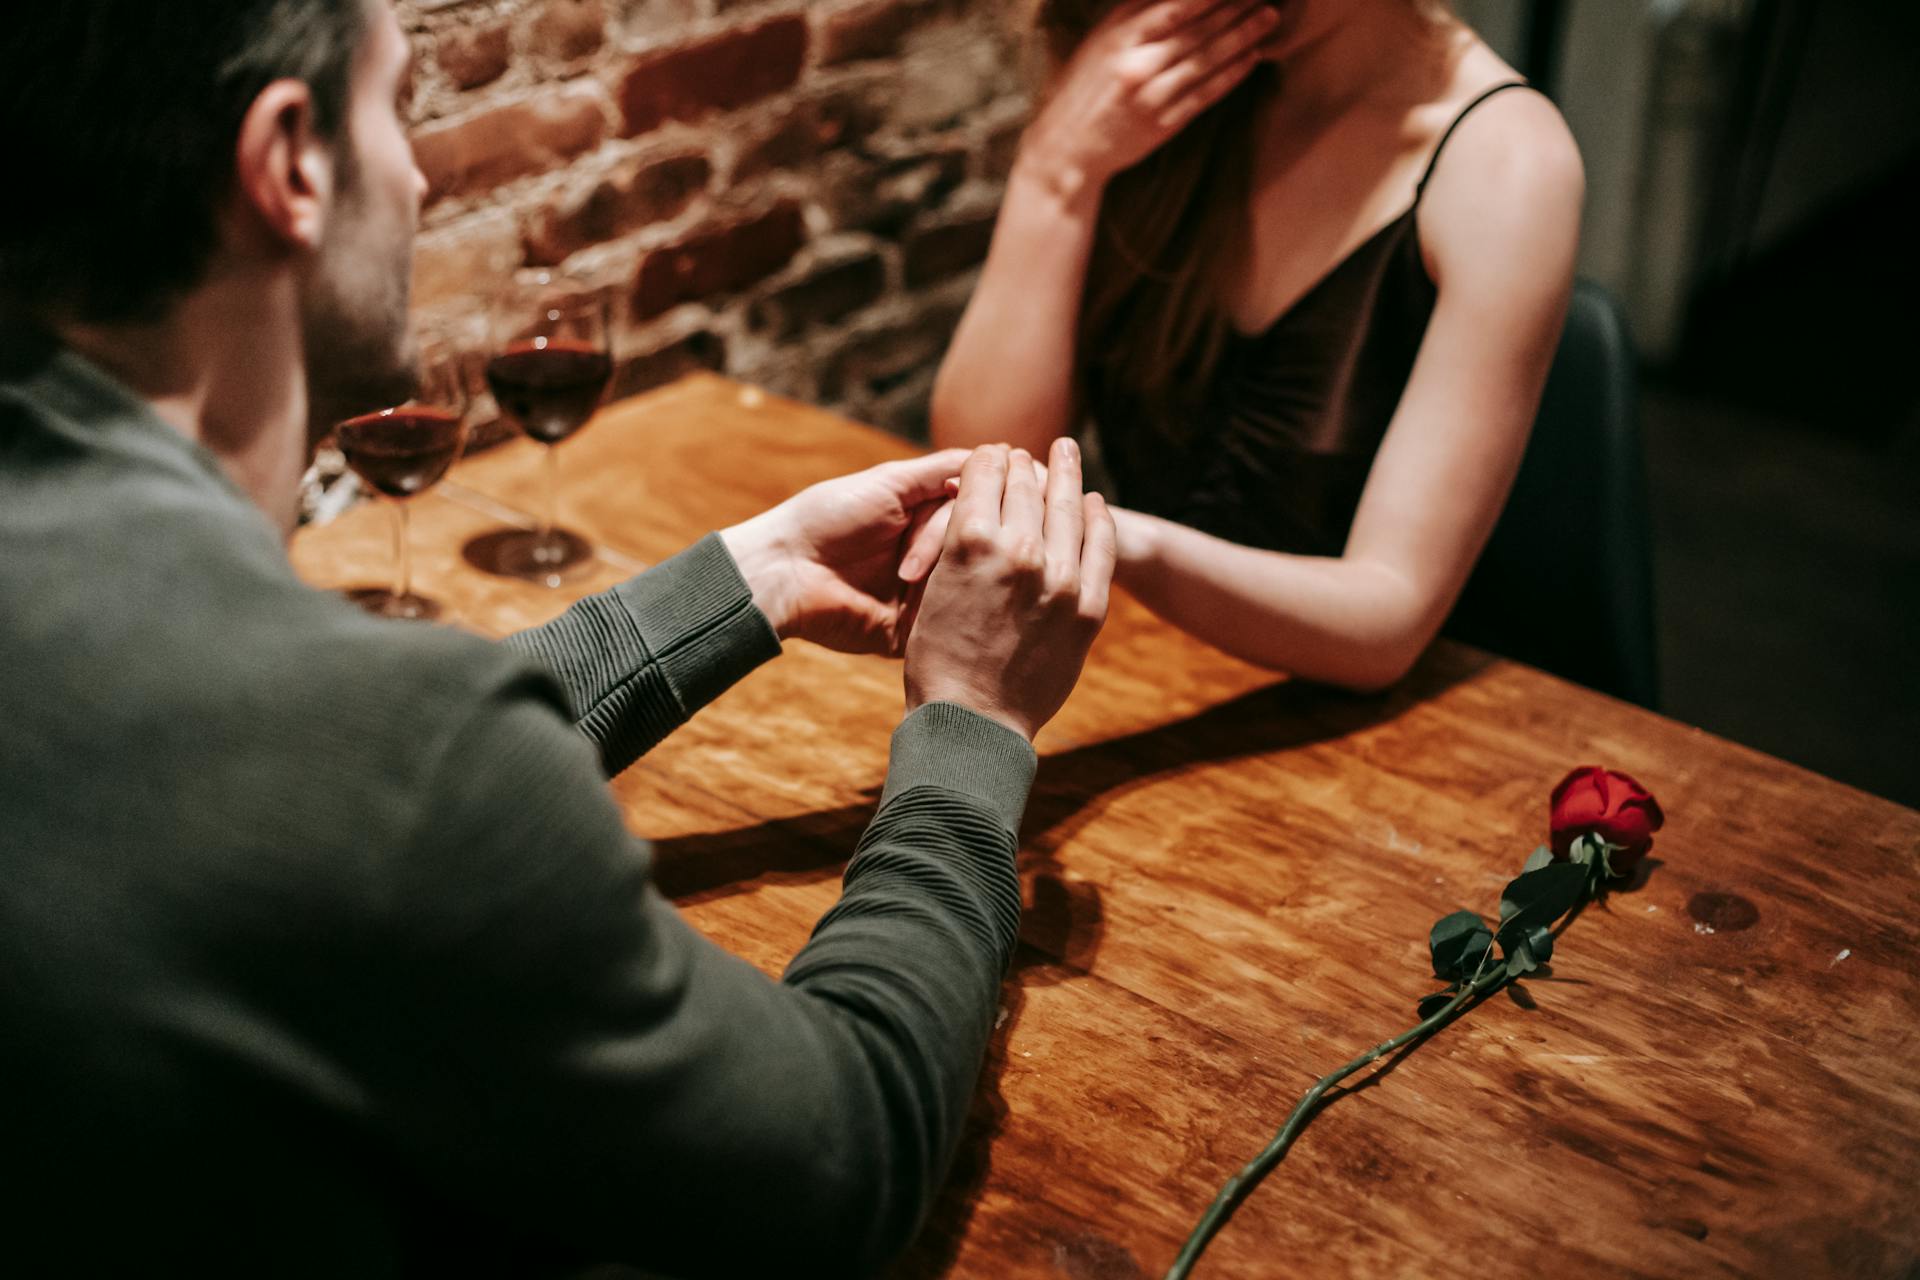 A man proposing at a restaurant | Source: Pexels